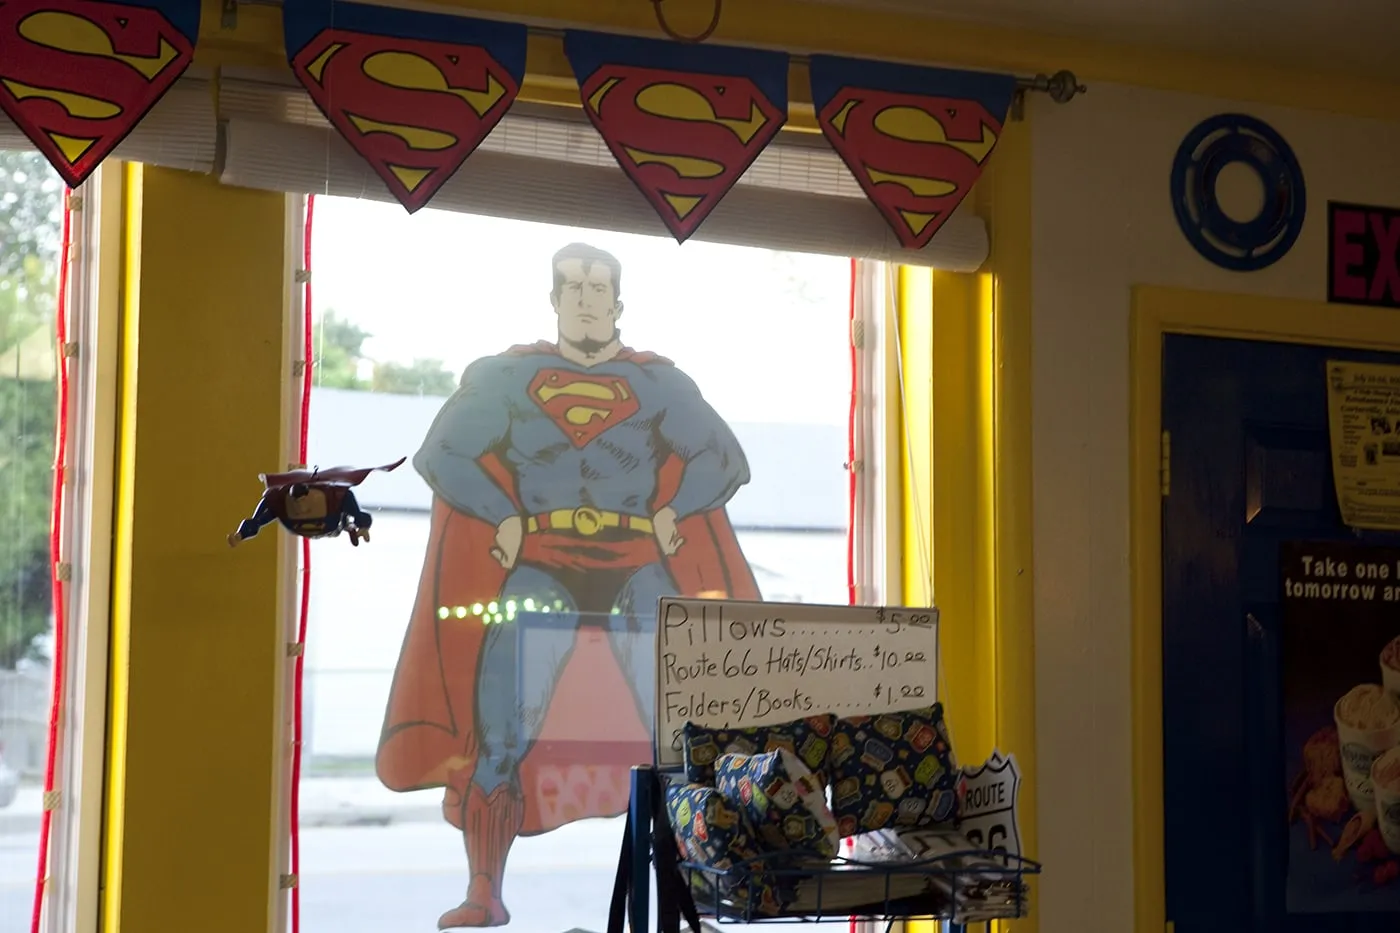 SuperTAM on 66 - Superman Memorabilia & Ice Cream in Carterville, Missouri